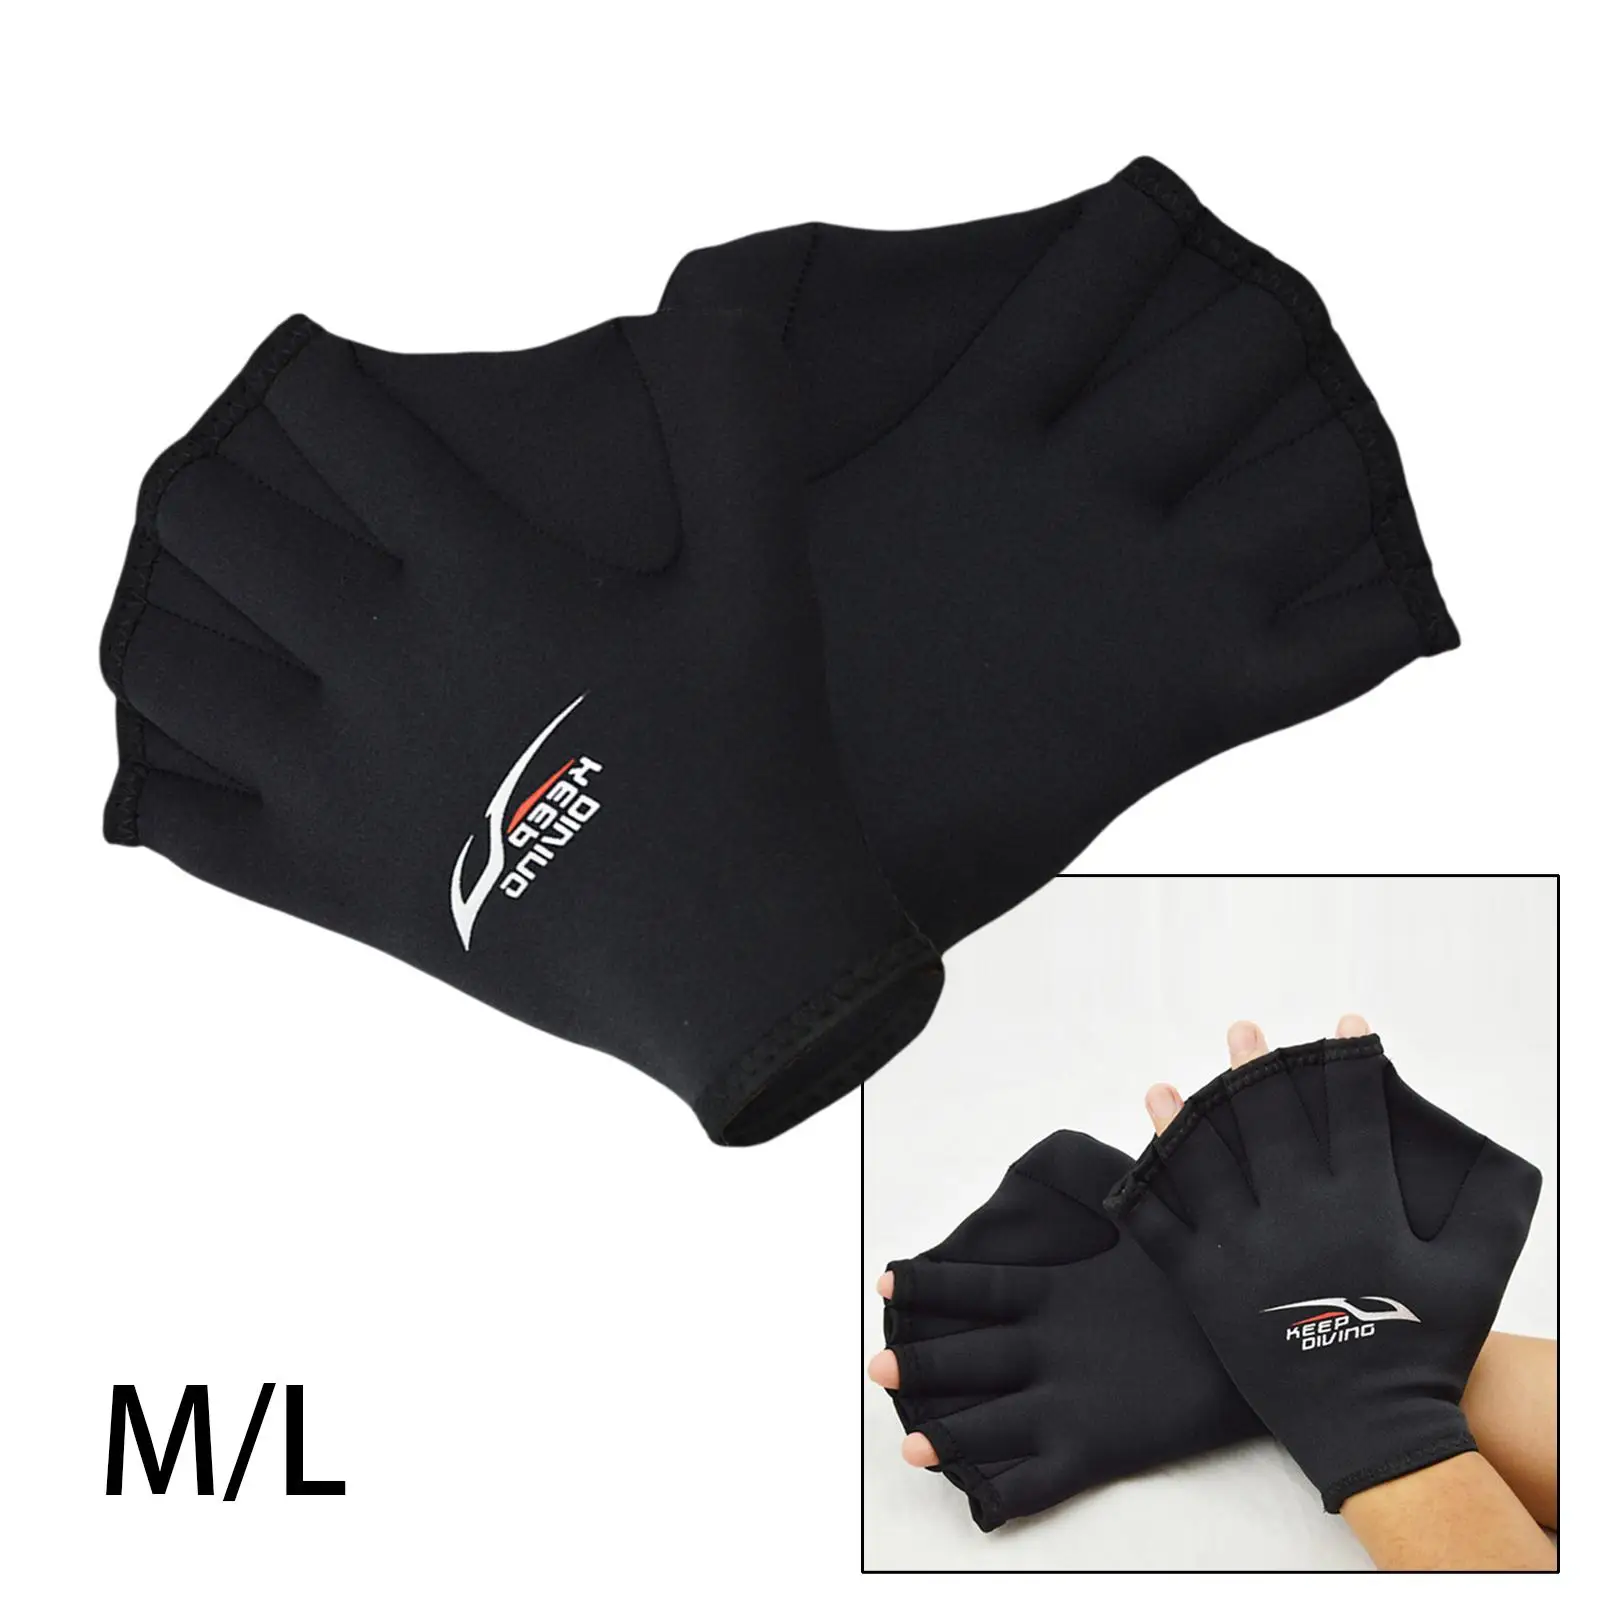 Swimming Gloves, Swim Training Gloves, Neoprene Gloves, Webbed Water Resistant Training Gloves for Swimming Diving